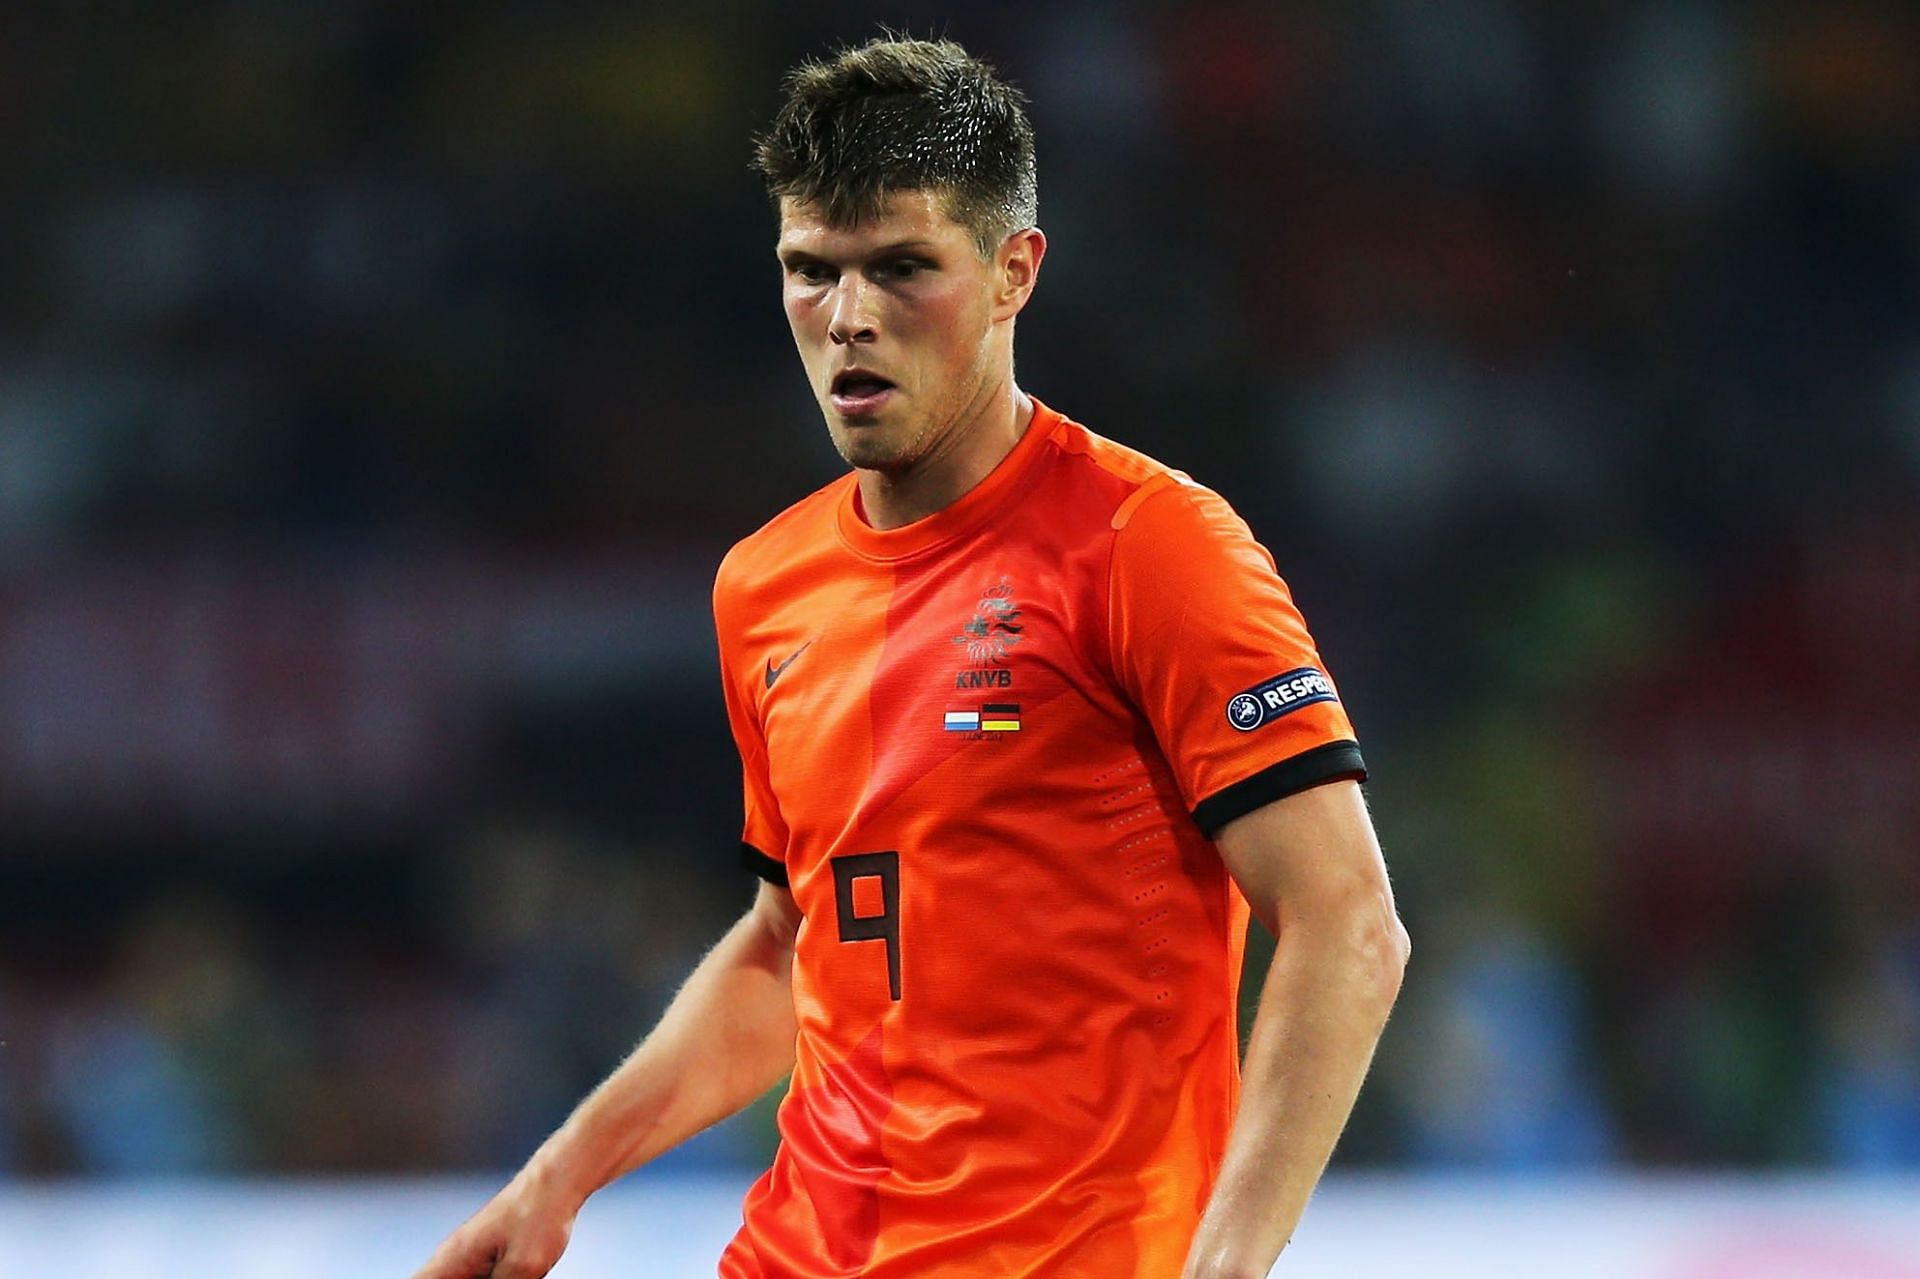 Klaas-Jan Huntelaar in action for the Netherlands.